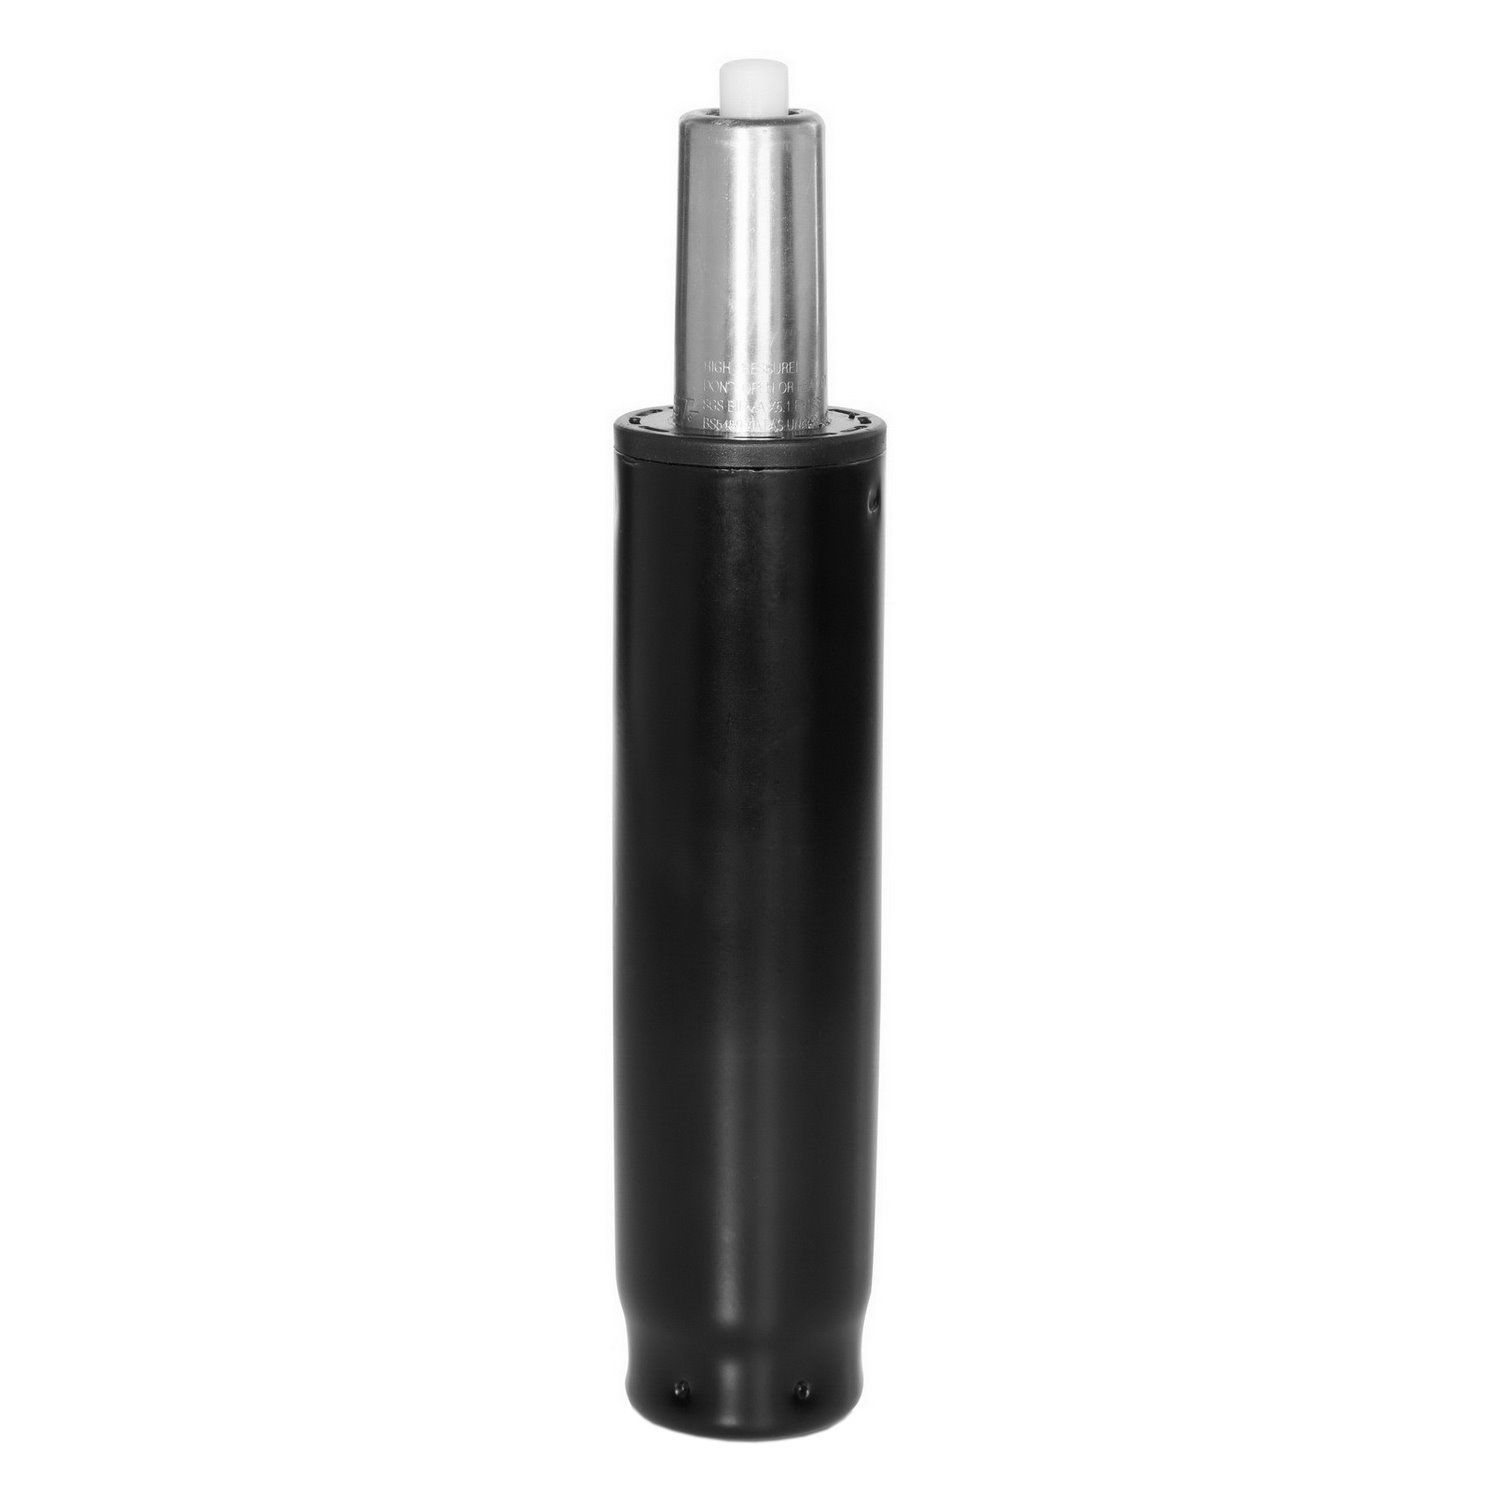 Gasfeder / Gasdruckfeder S, 25-32 cm hjh OFFICE